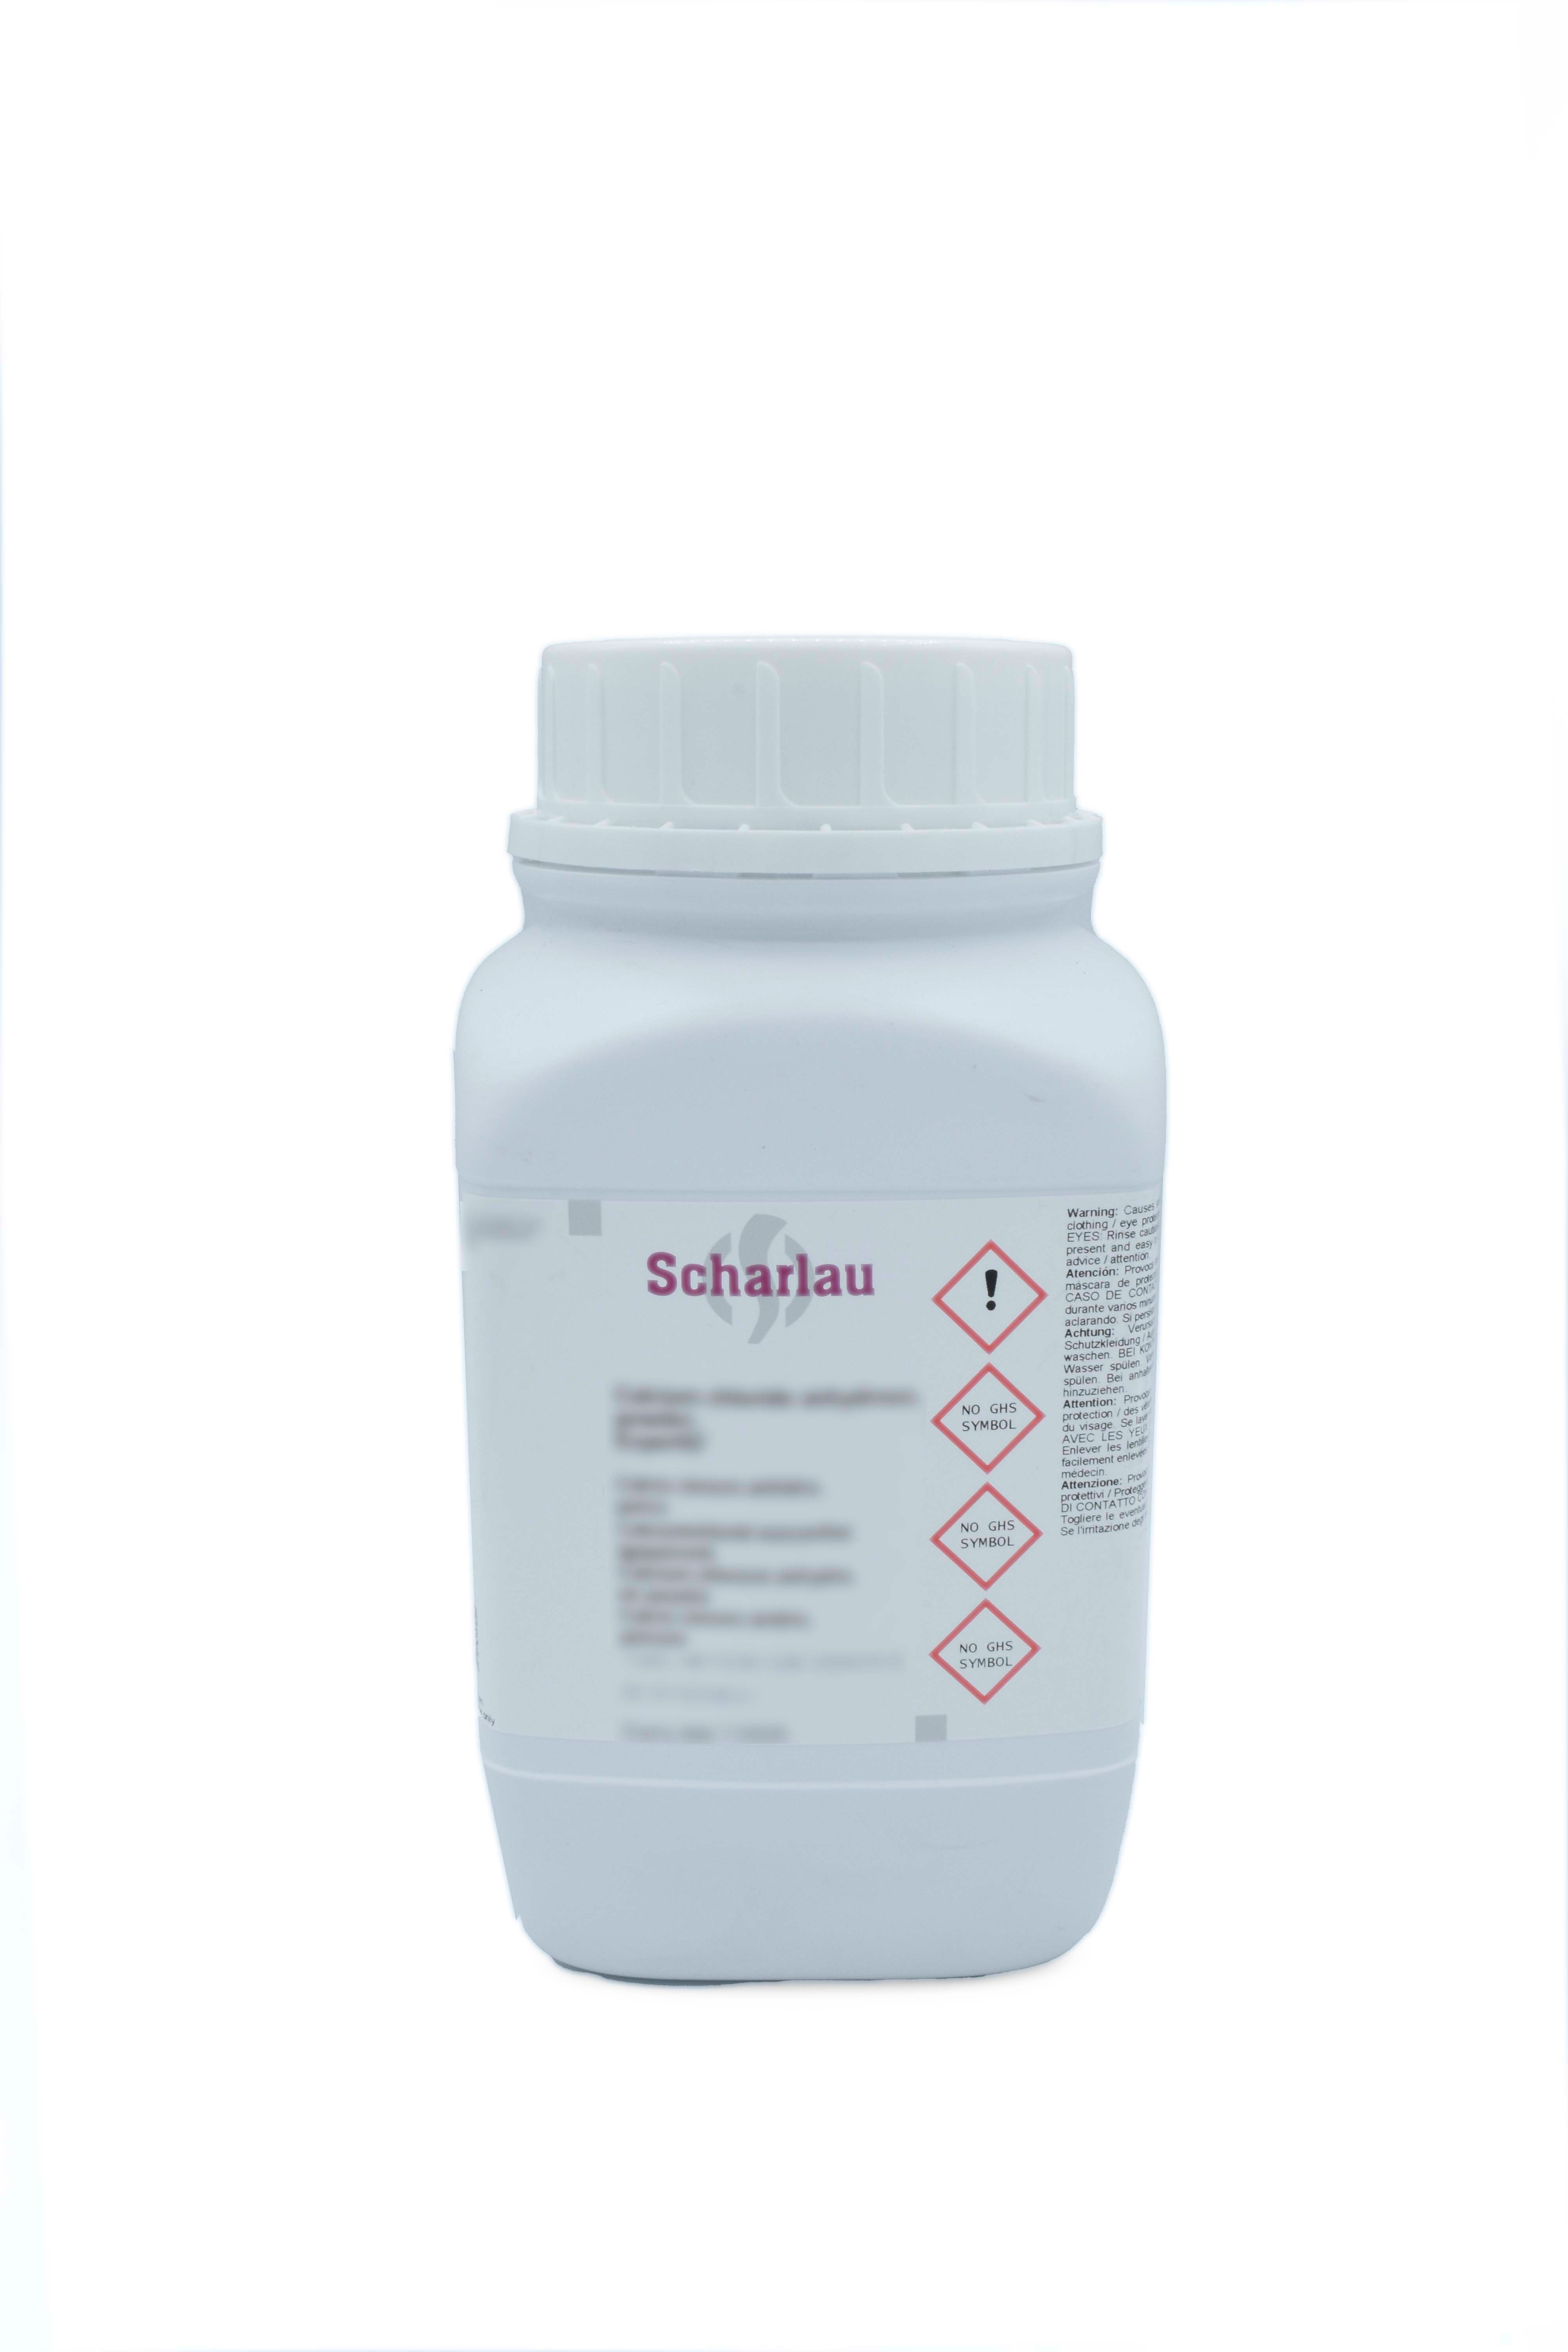 Brij® 35 (Brij is a trademark of ICI America Inc.) , Polyoxyethylene lauryl ether, Polyethyleneglycol lauryl ether